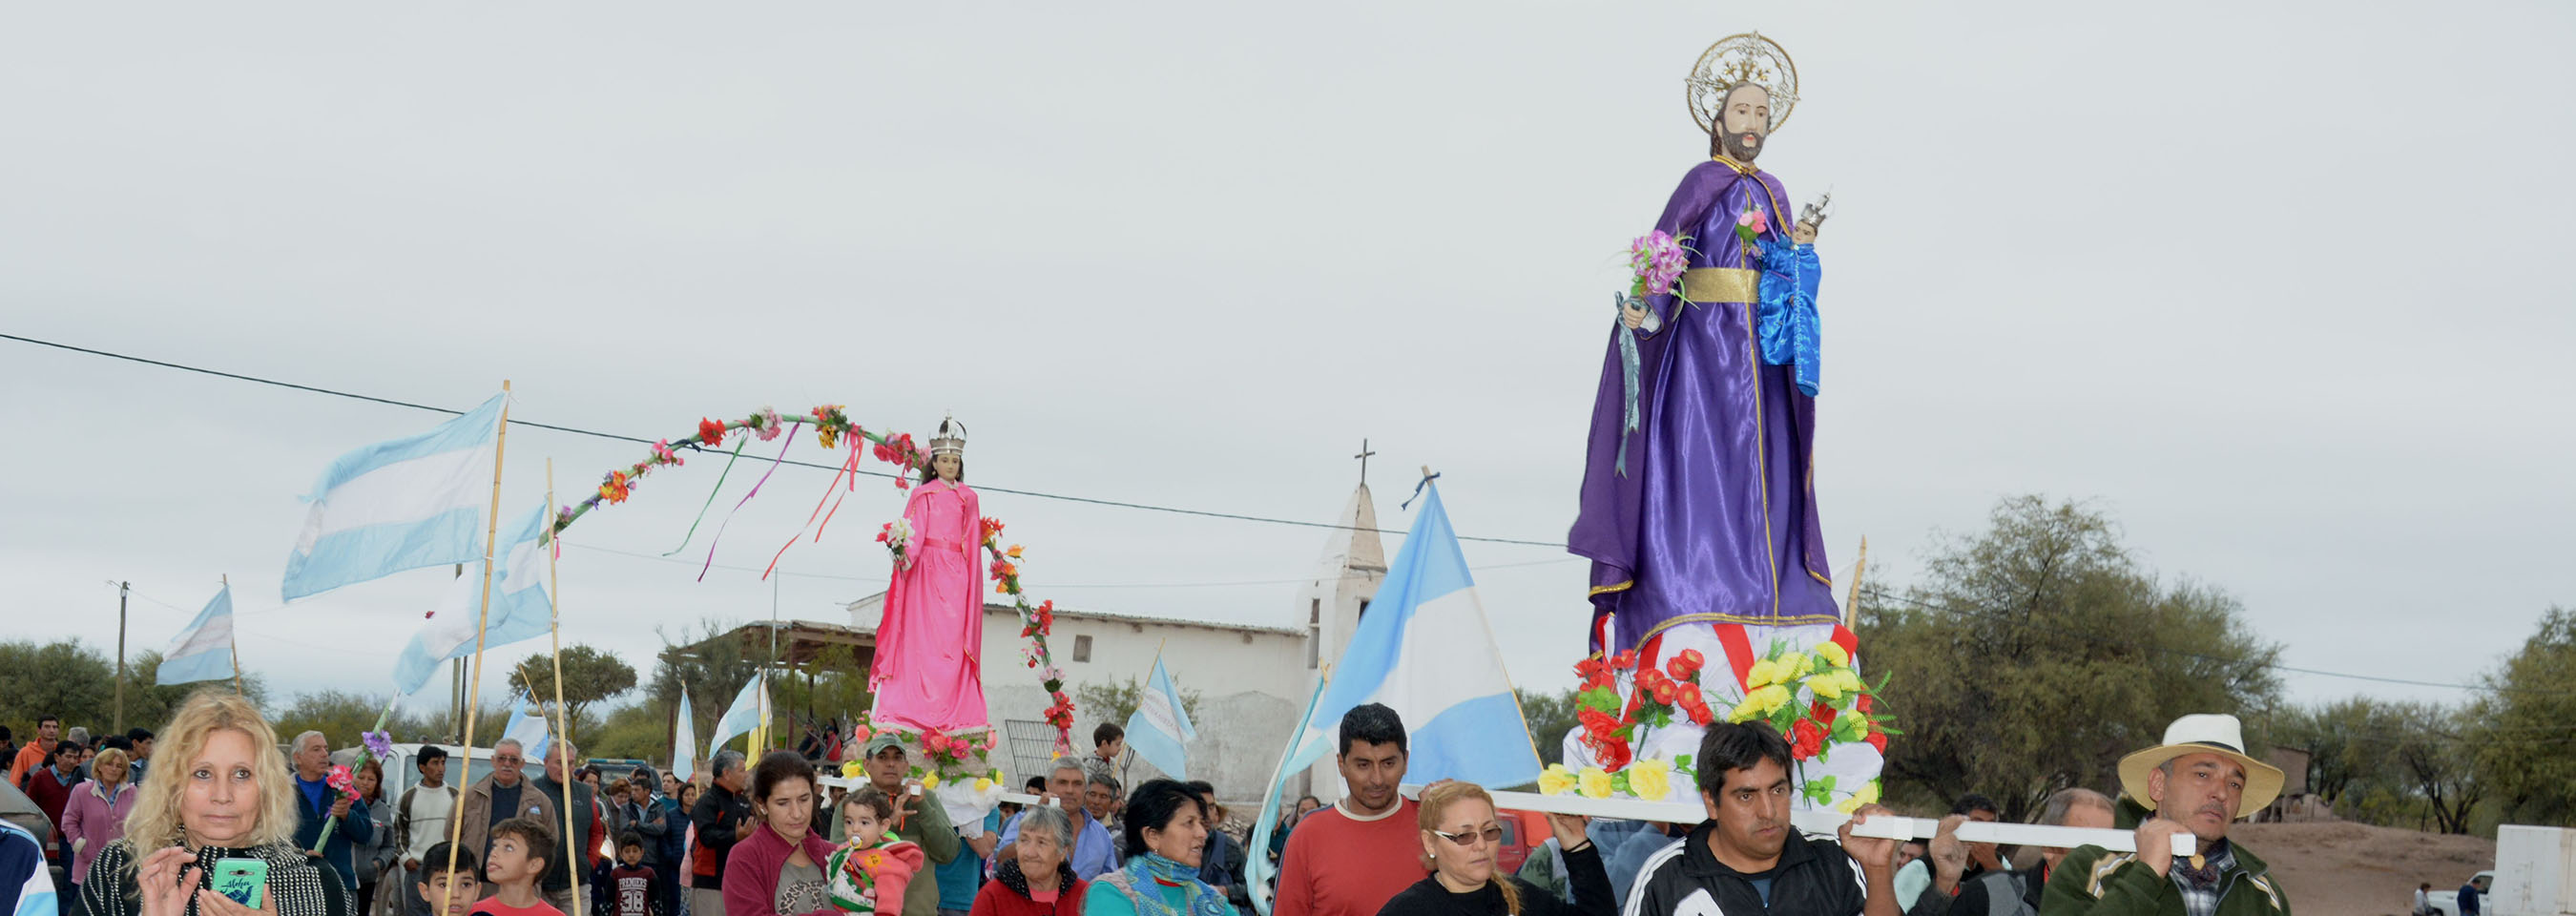 San José Artesano, una fiesta patronal con historia